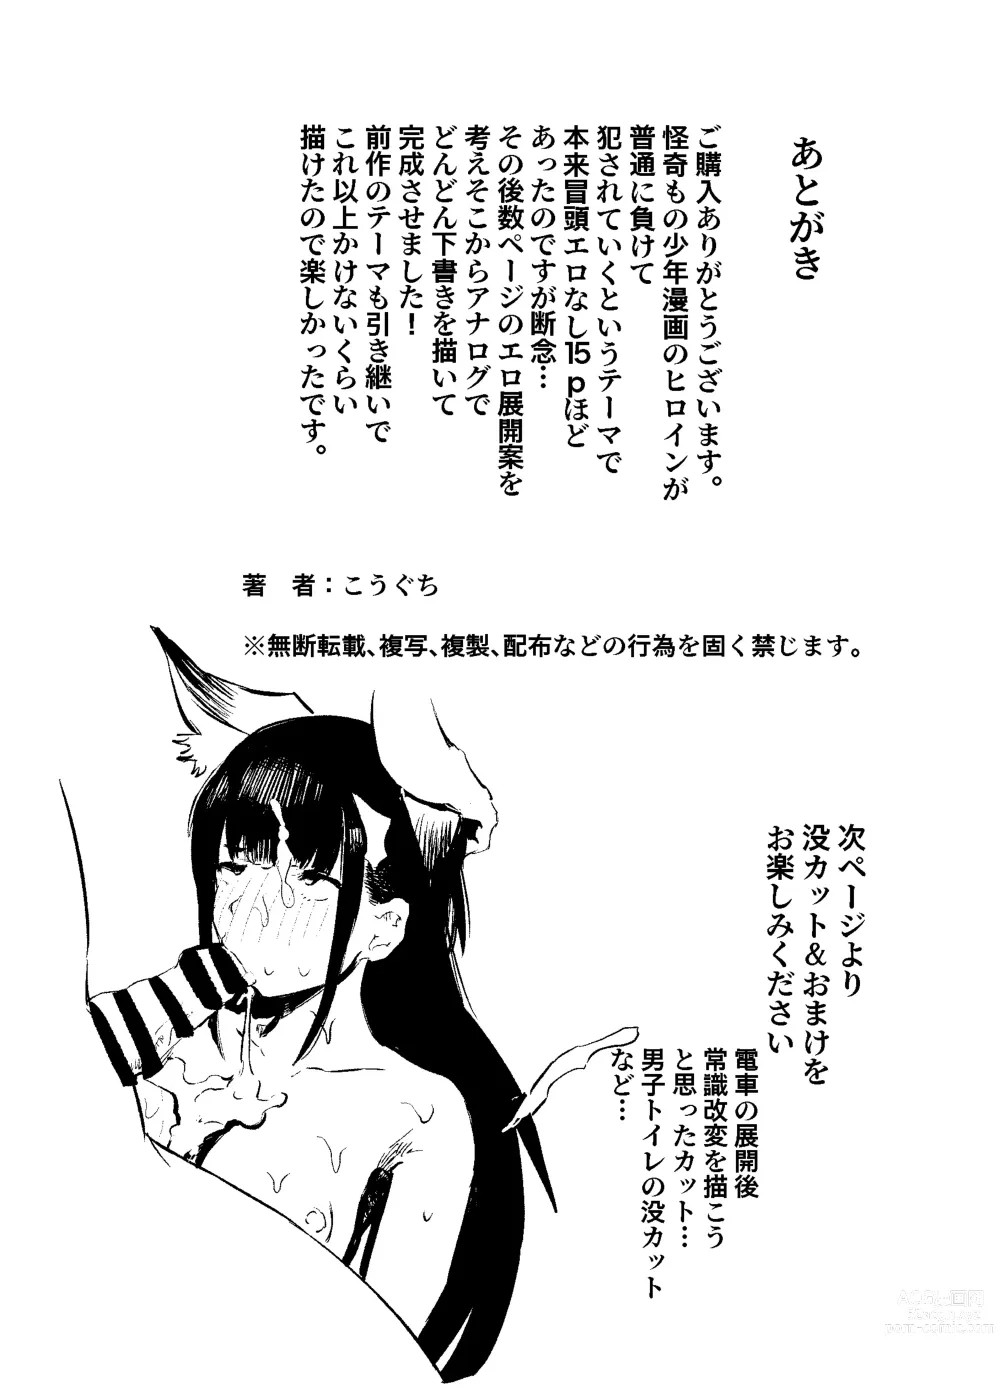 Page 83 of doujinshi Youko Ayako